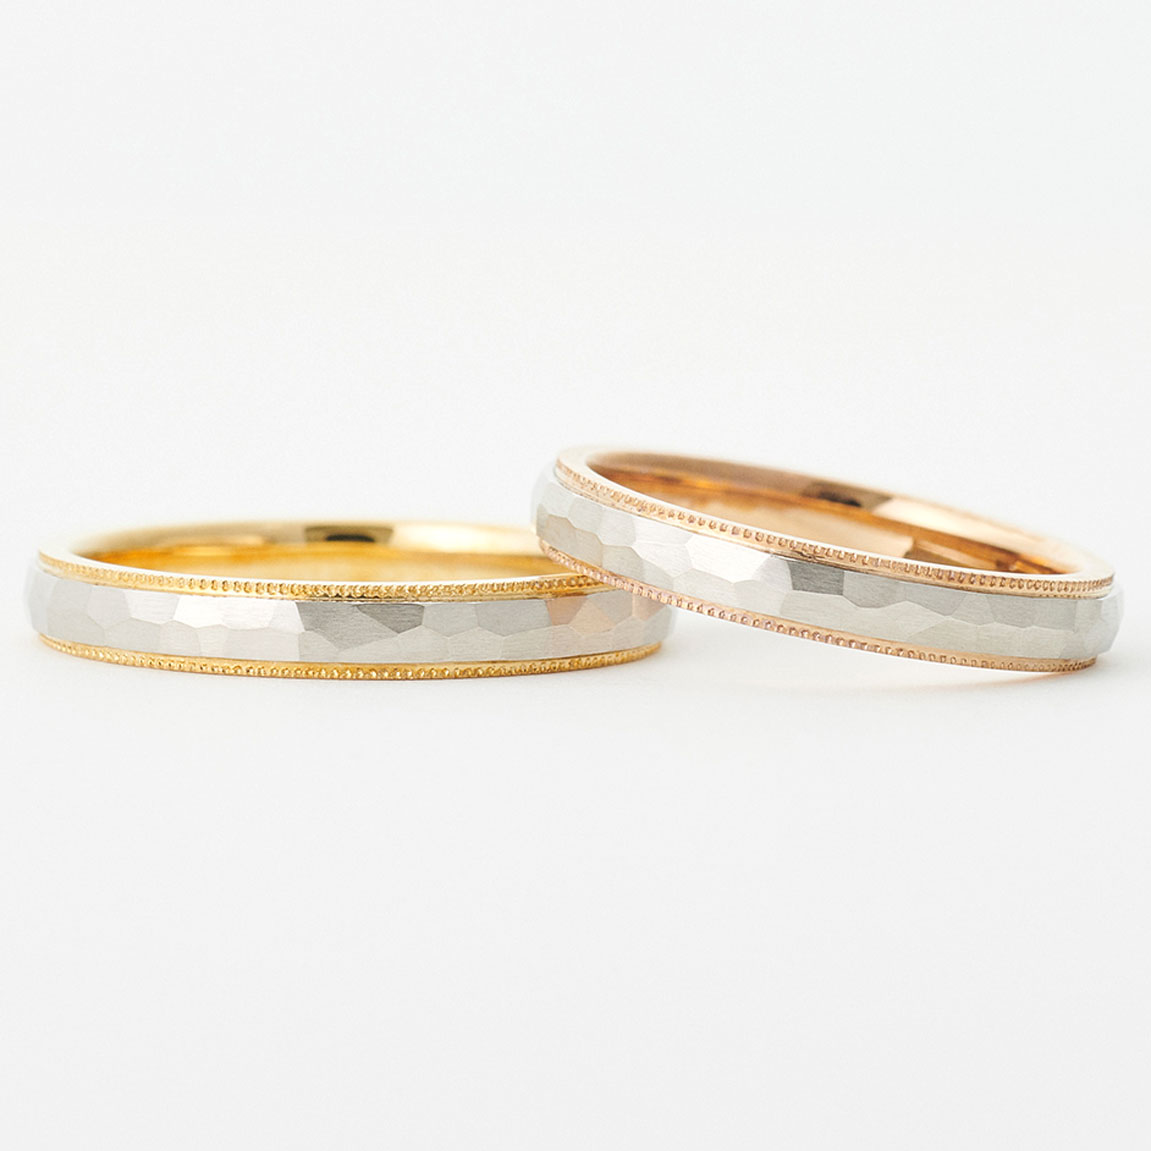 結婚指輪“クラフト“ | 結婚指輪らしい華やかさと、クラフト感を両立したデザイン。二つの地金を張り合わせたコンビネーション、表情豊かなテクスチャ、繊細なミルグレインといった高いデザイン性は、職人の技術力から生み出される個性あるリングです。